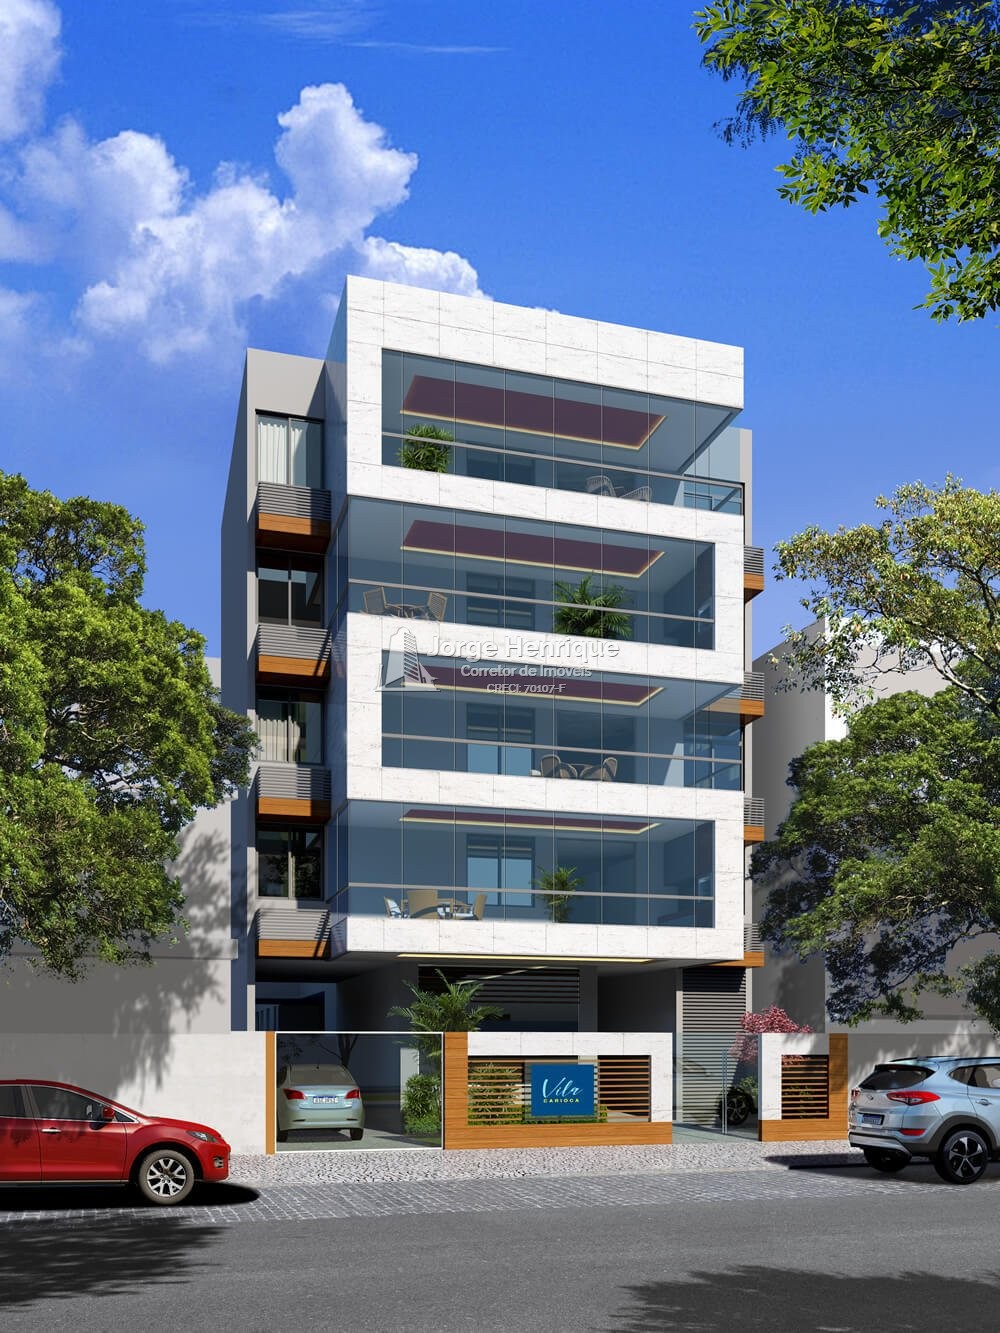 Apartamento  venda  no Vila Isabel - Rio de Janeiro, RJ. Imveis